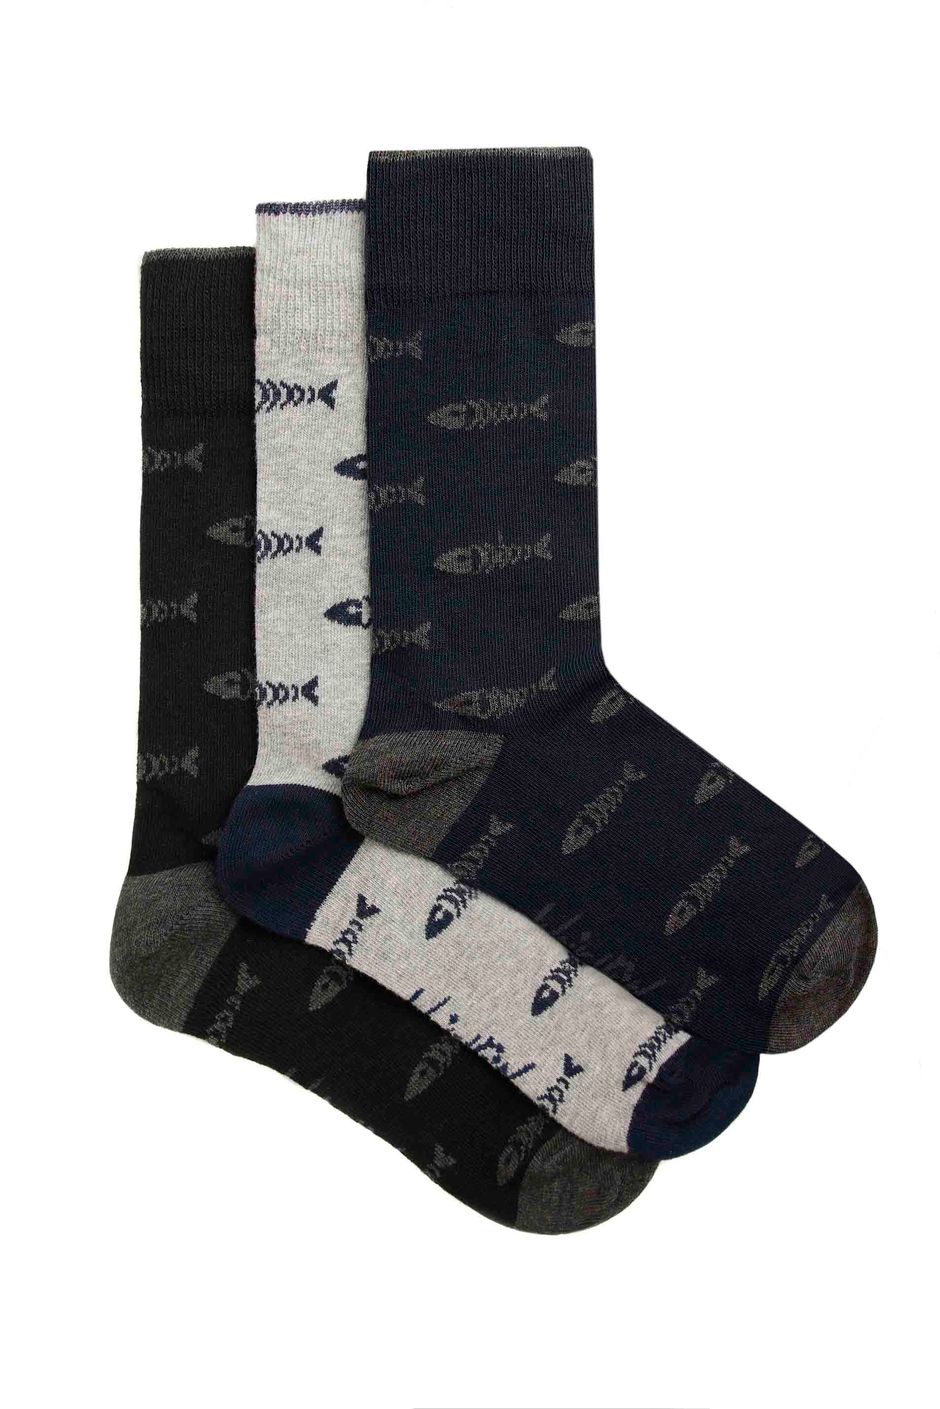 Ronan Branded Bones Sock 3 Pack Grey